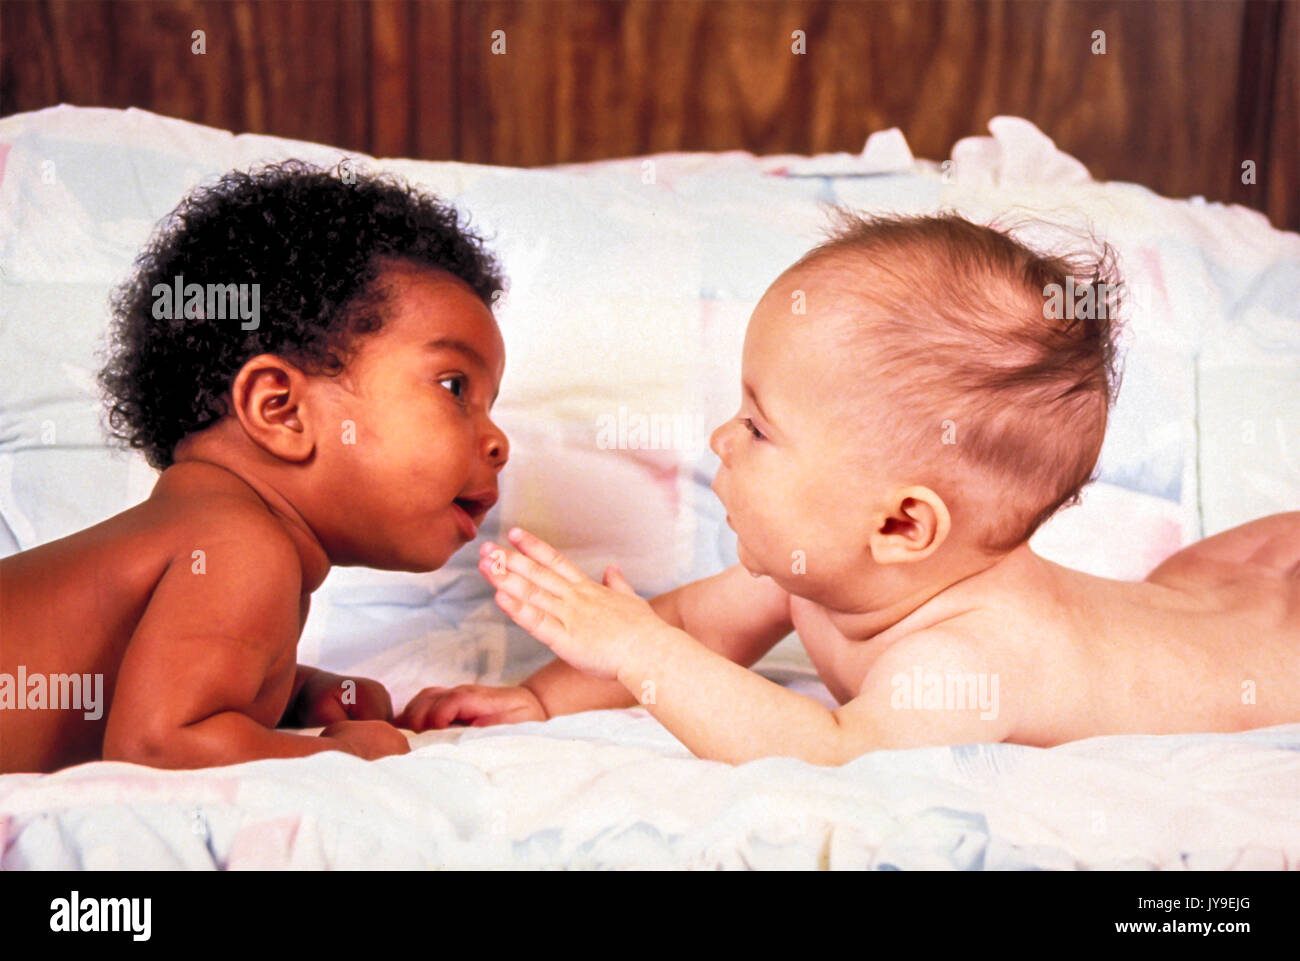 Zwei 2 Babys dunkel helle Haut Magen eng erreichen heraus erreichen, um jede andere neugierige Fragen interracial inter Rasse © Stockfoto